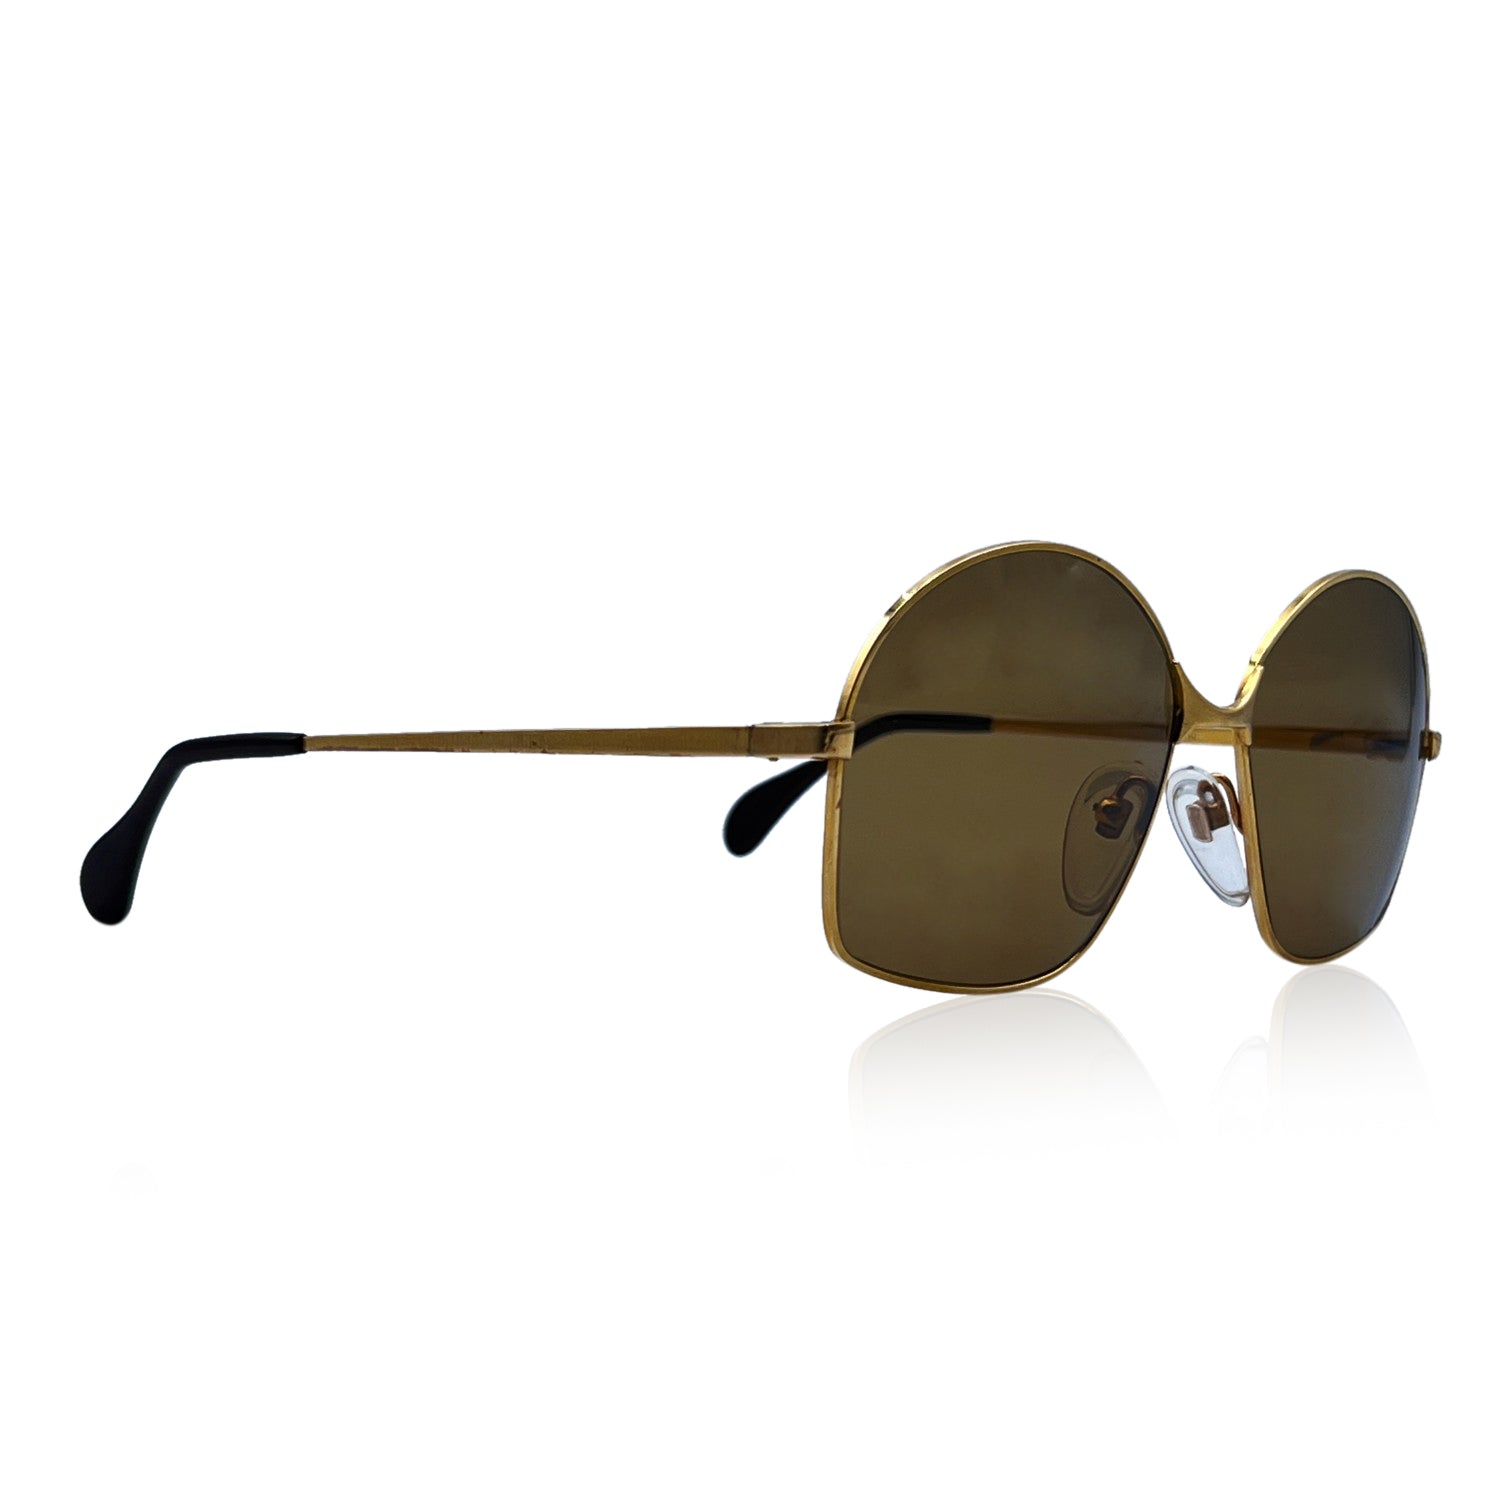 BAUSCH & LOMB U.S.A Sunglasses 516